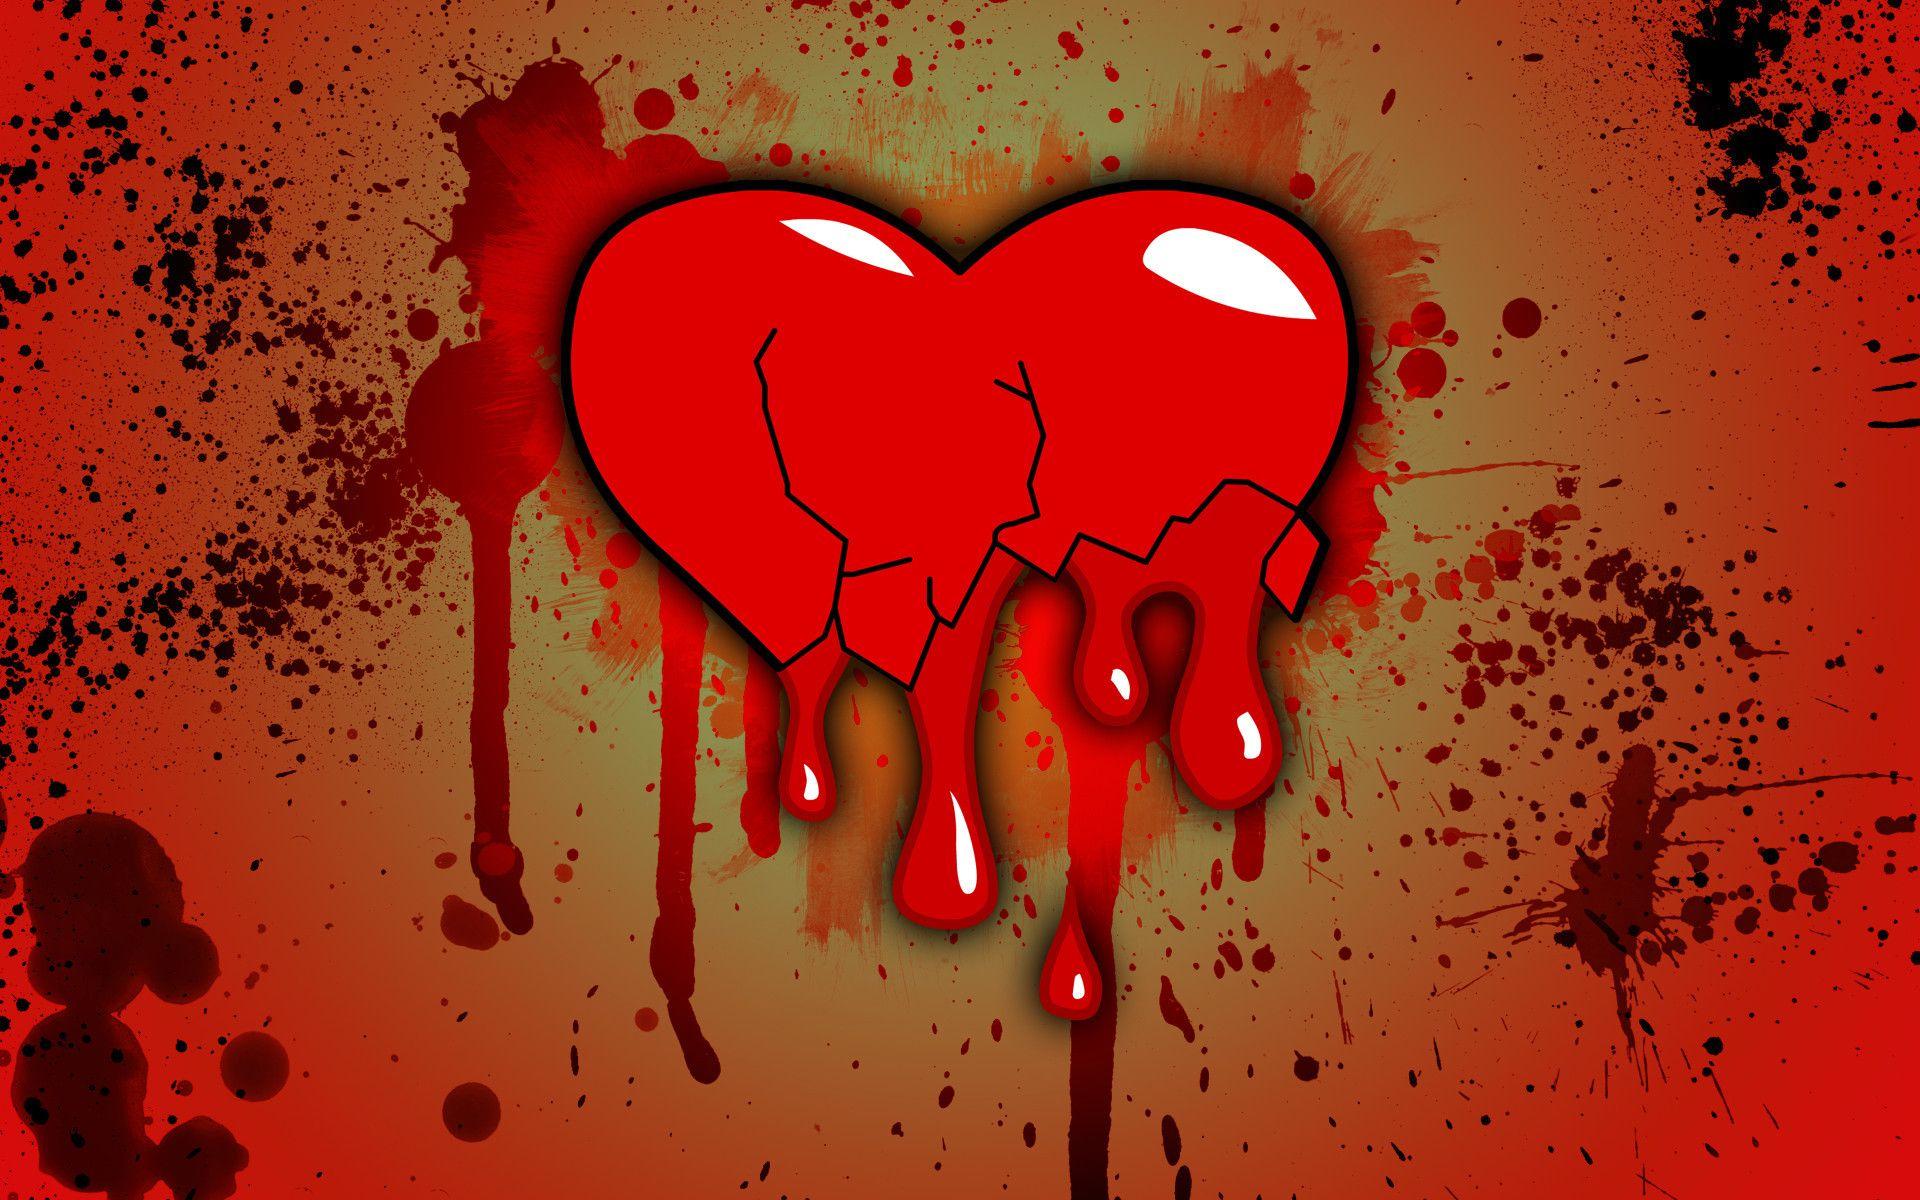 Download wallpaper: broken heart, Love, blood, download photo